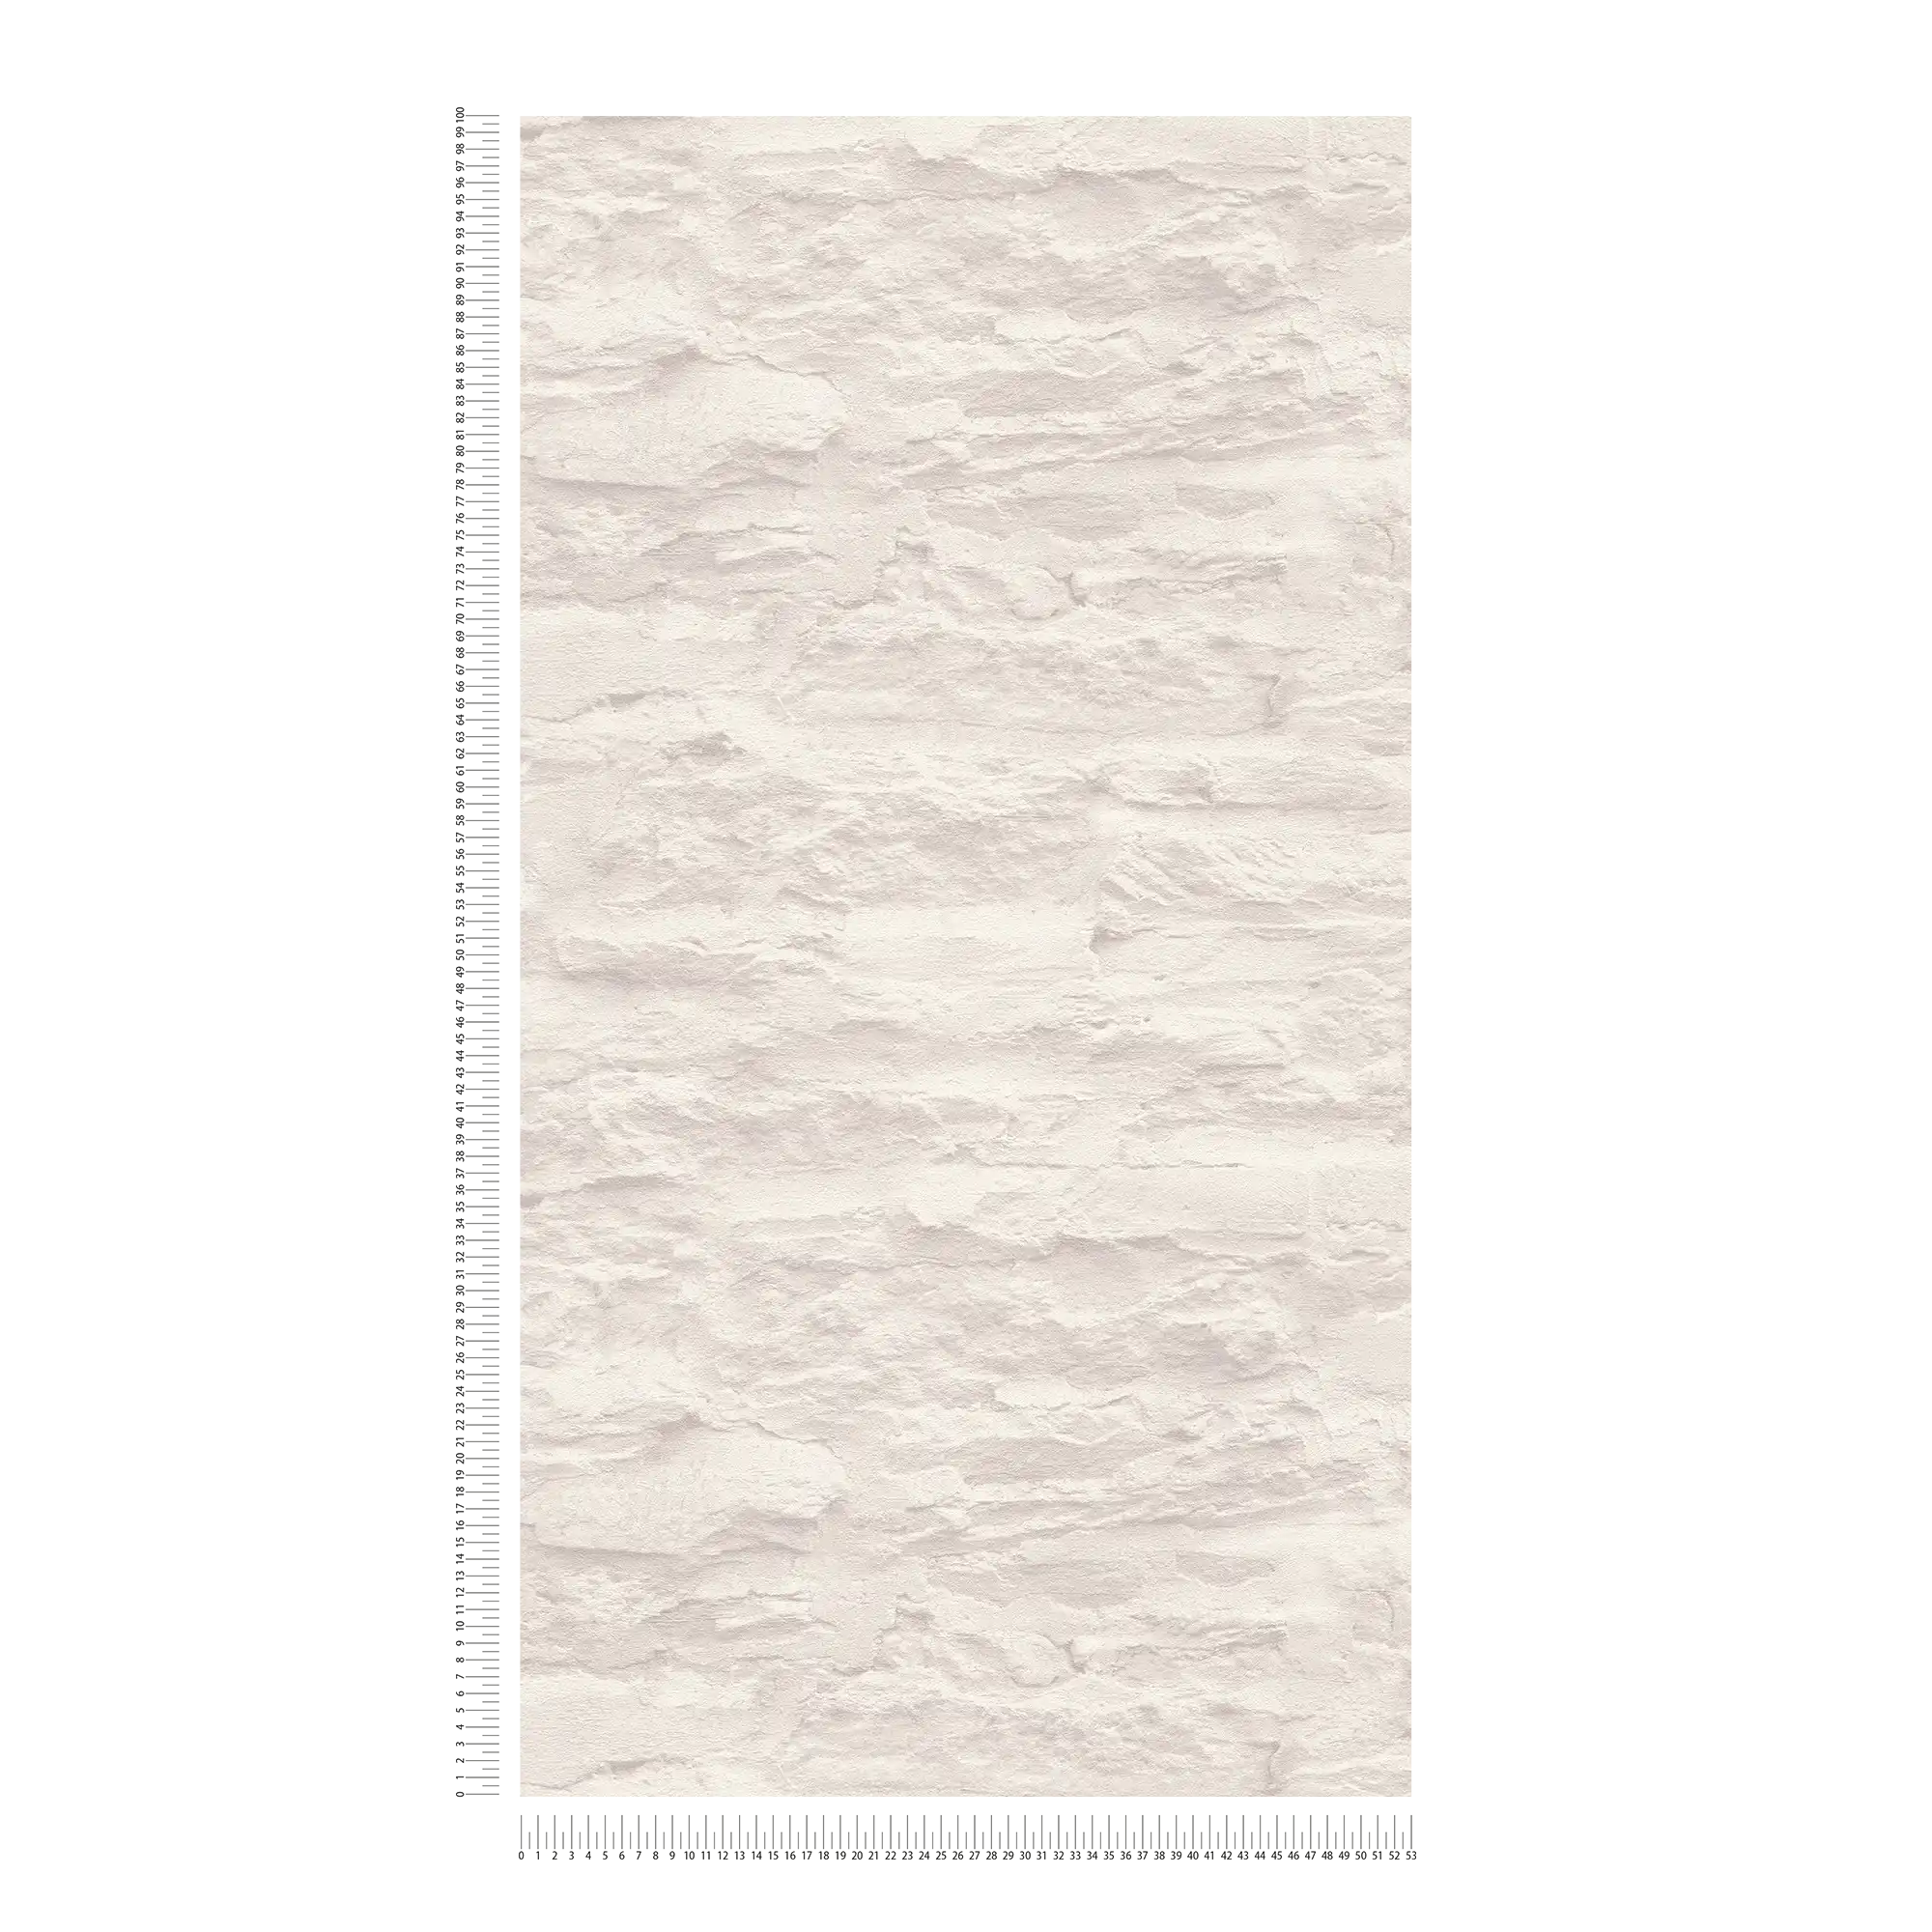             Licht vliesbehang in wandoptiek met natuursteen & gips - crème, wit
        